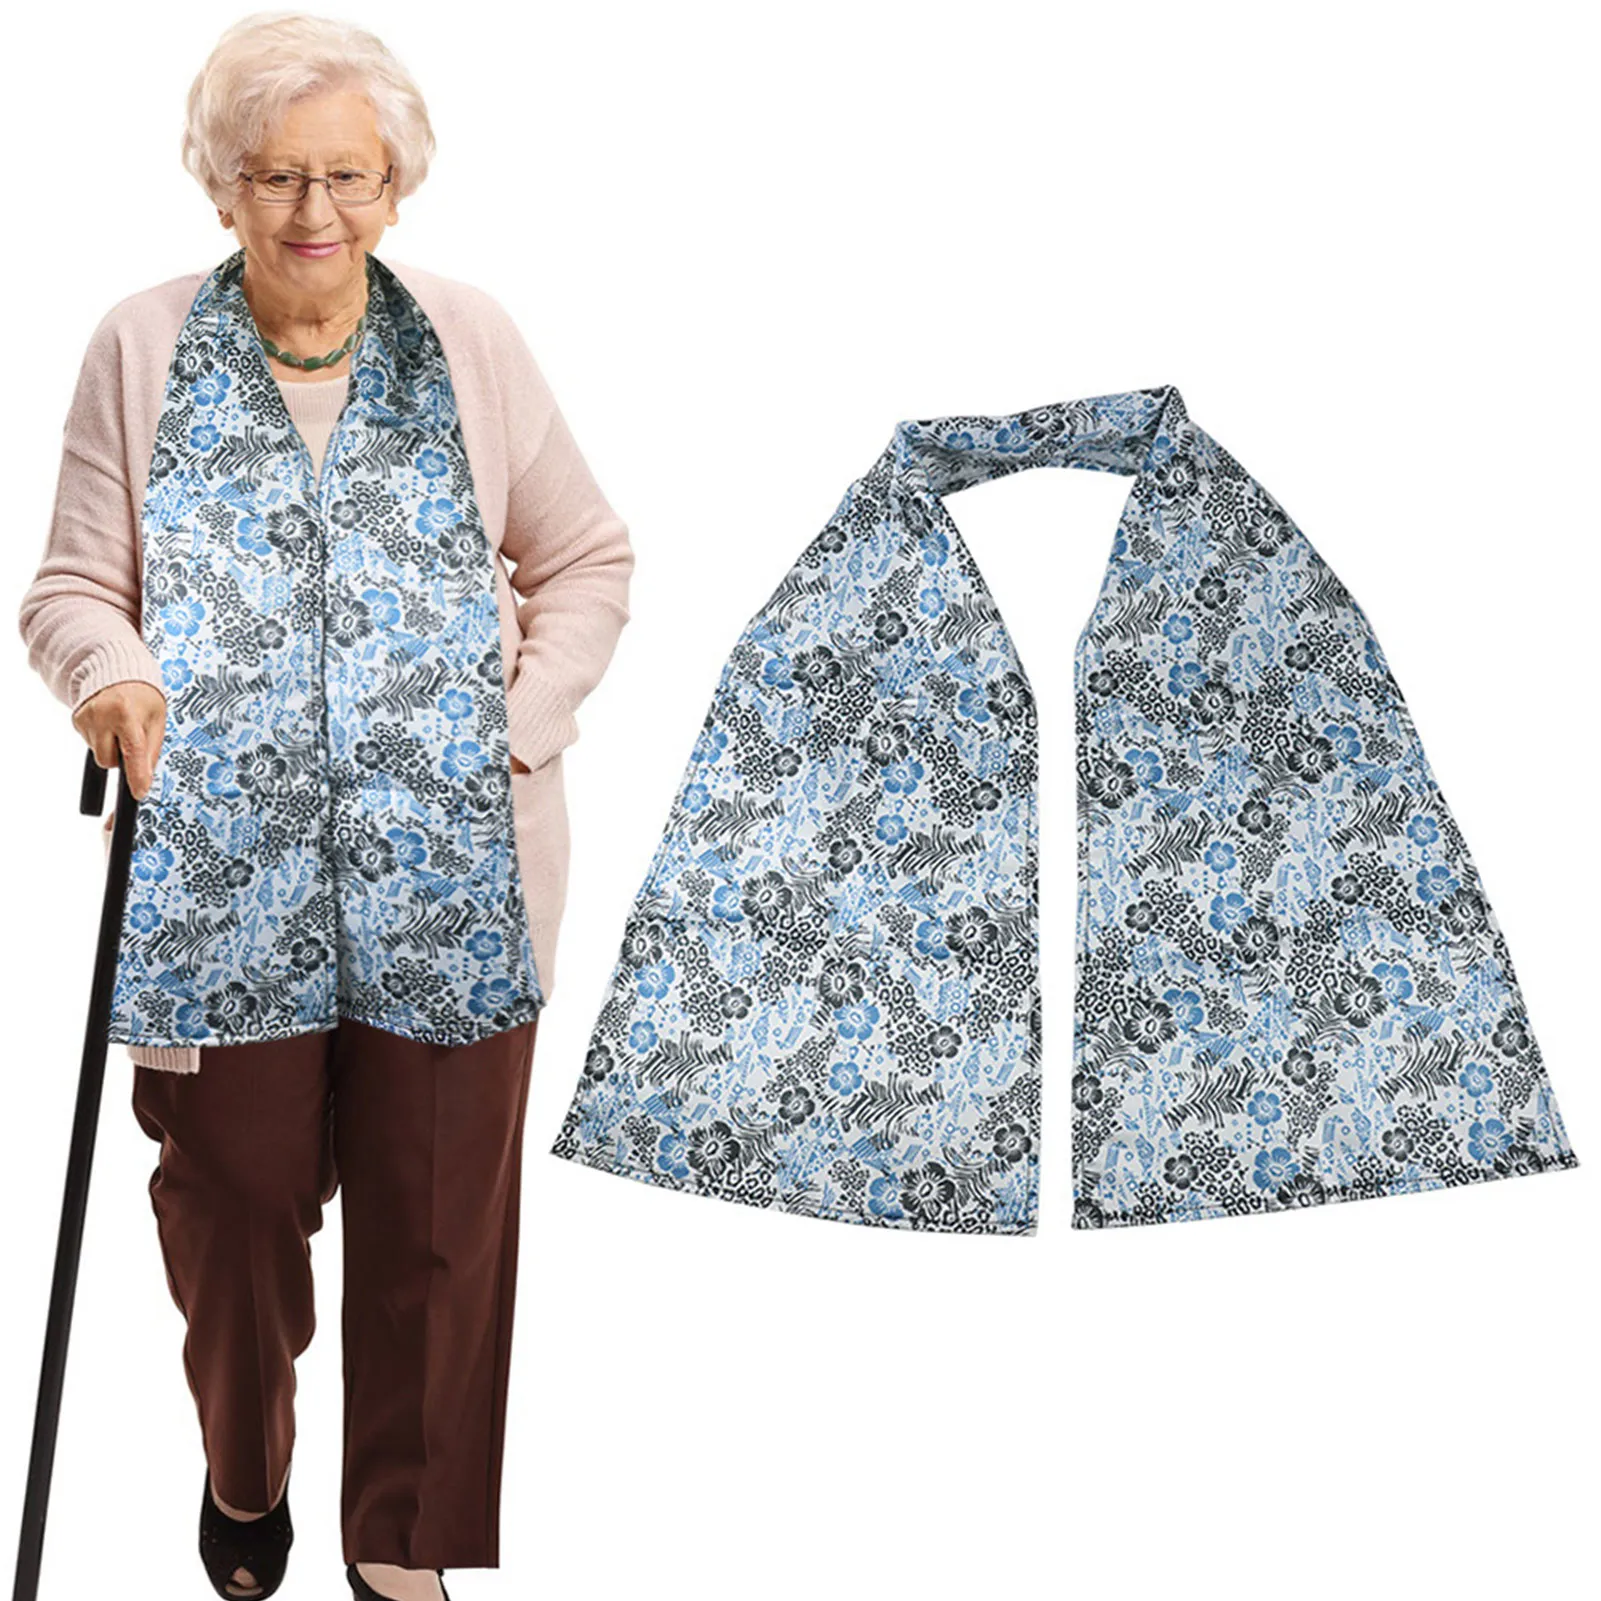 

Слюнявчики для кормления взрослых, защитная одежда для взрослого, обеденный шарф для пожилых людей с ограниченными возможностями, аксессуары для ежедневного использования